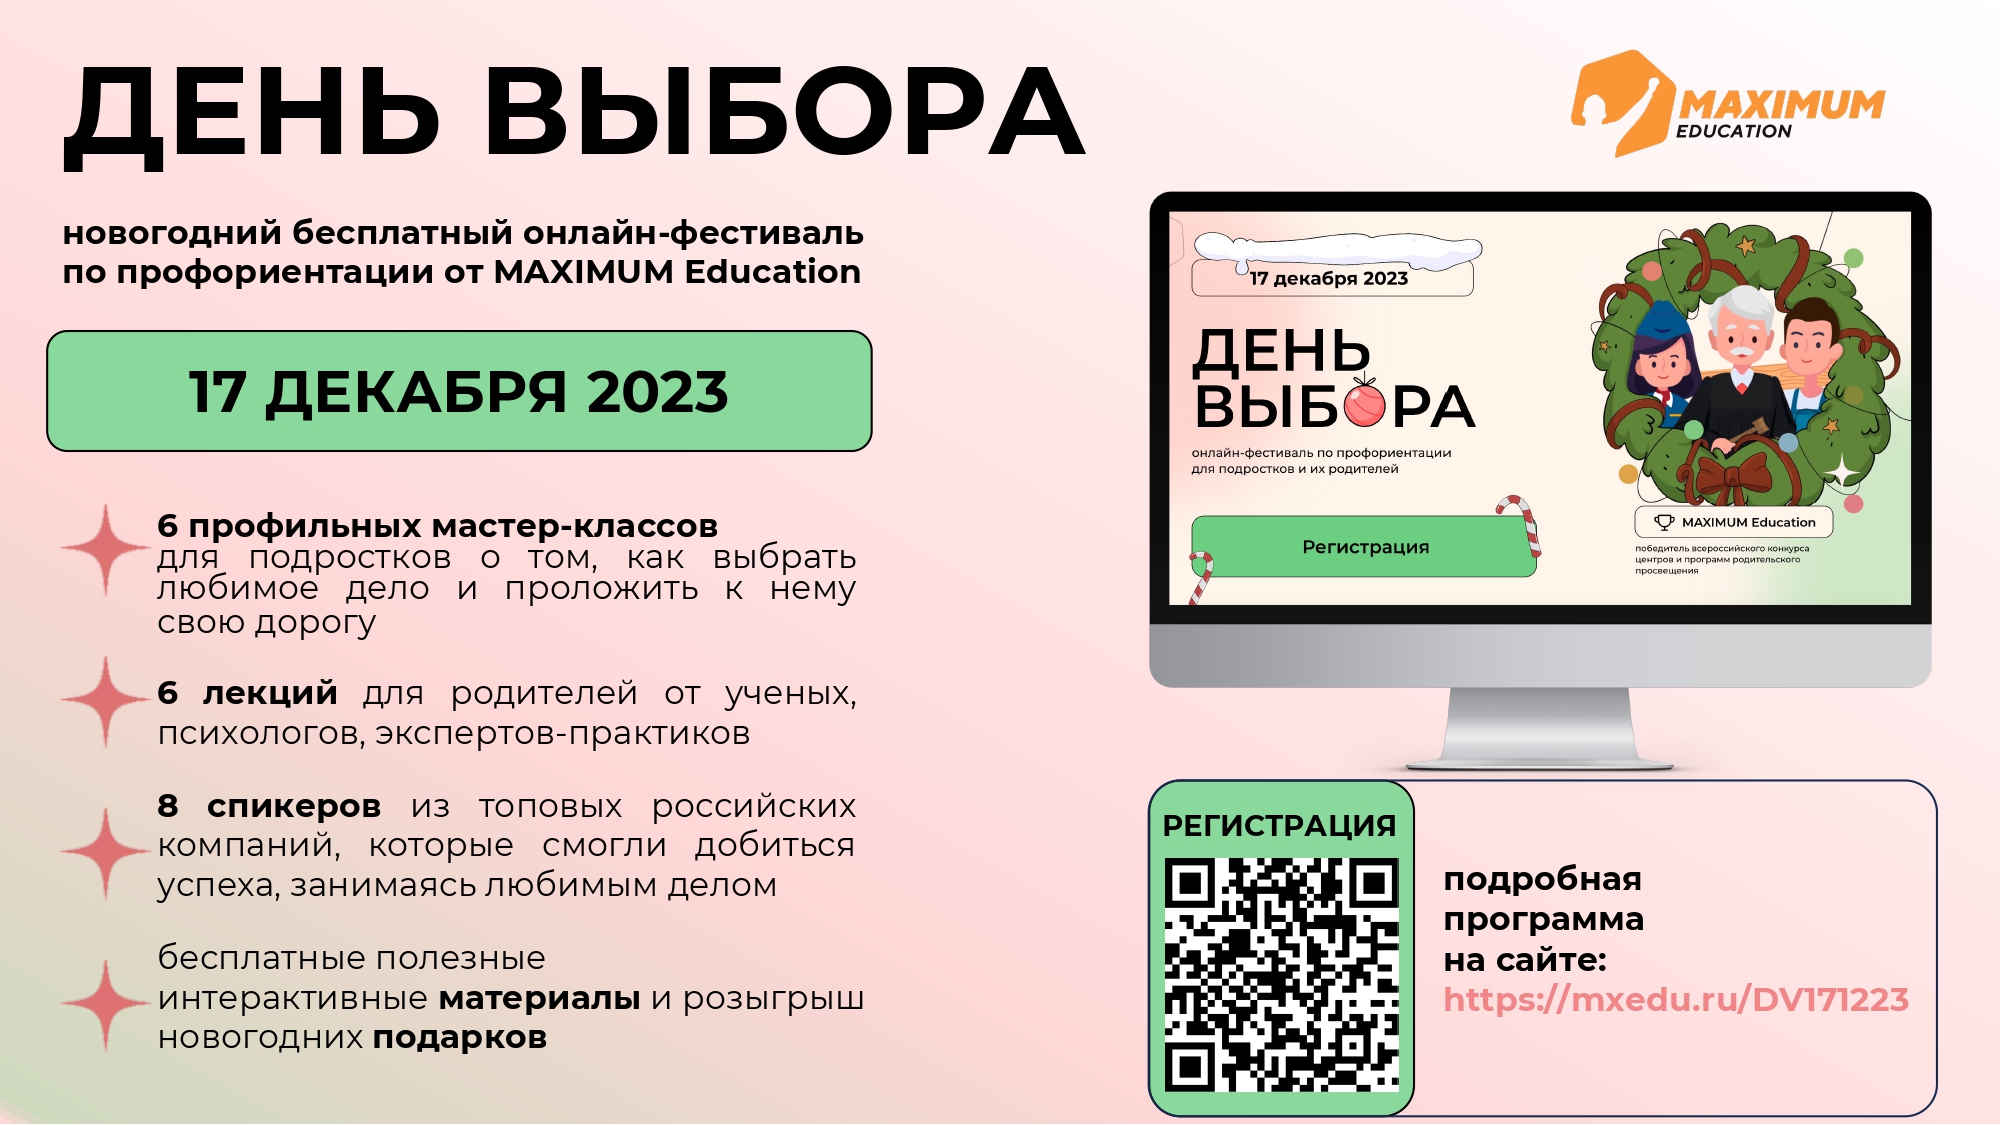 Всероссийский онлайн-фестиваль  по профориентации «День выбора».